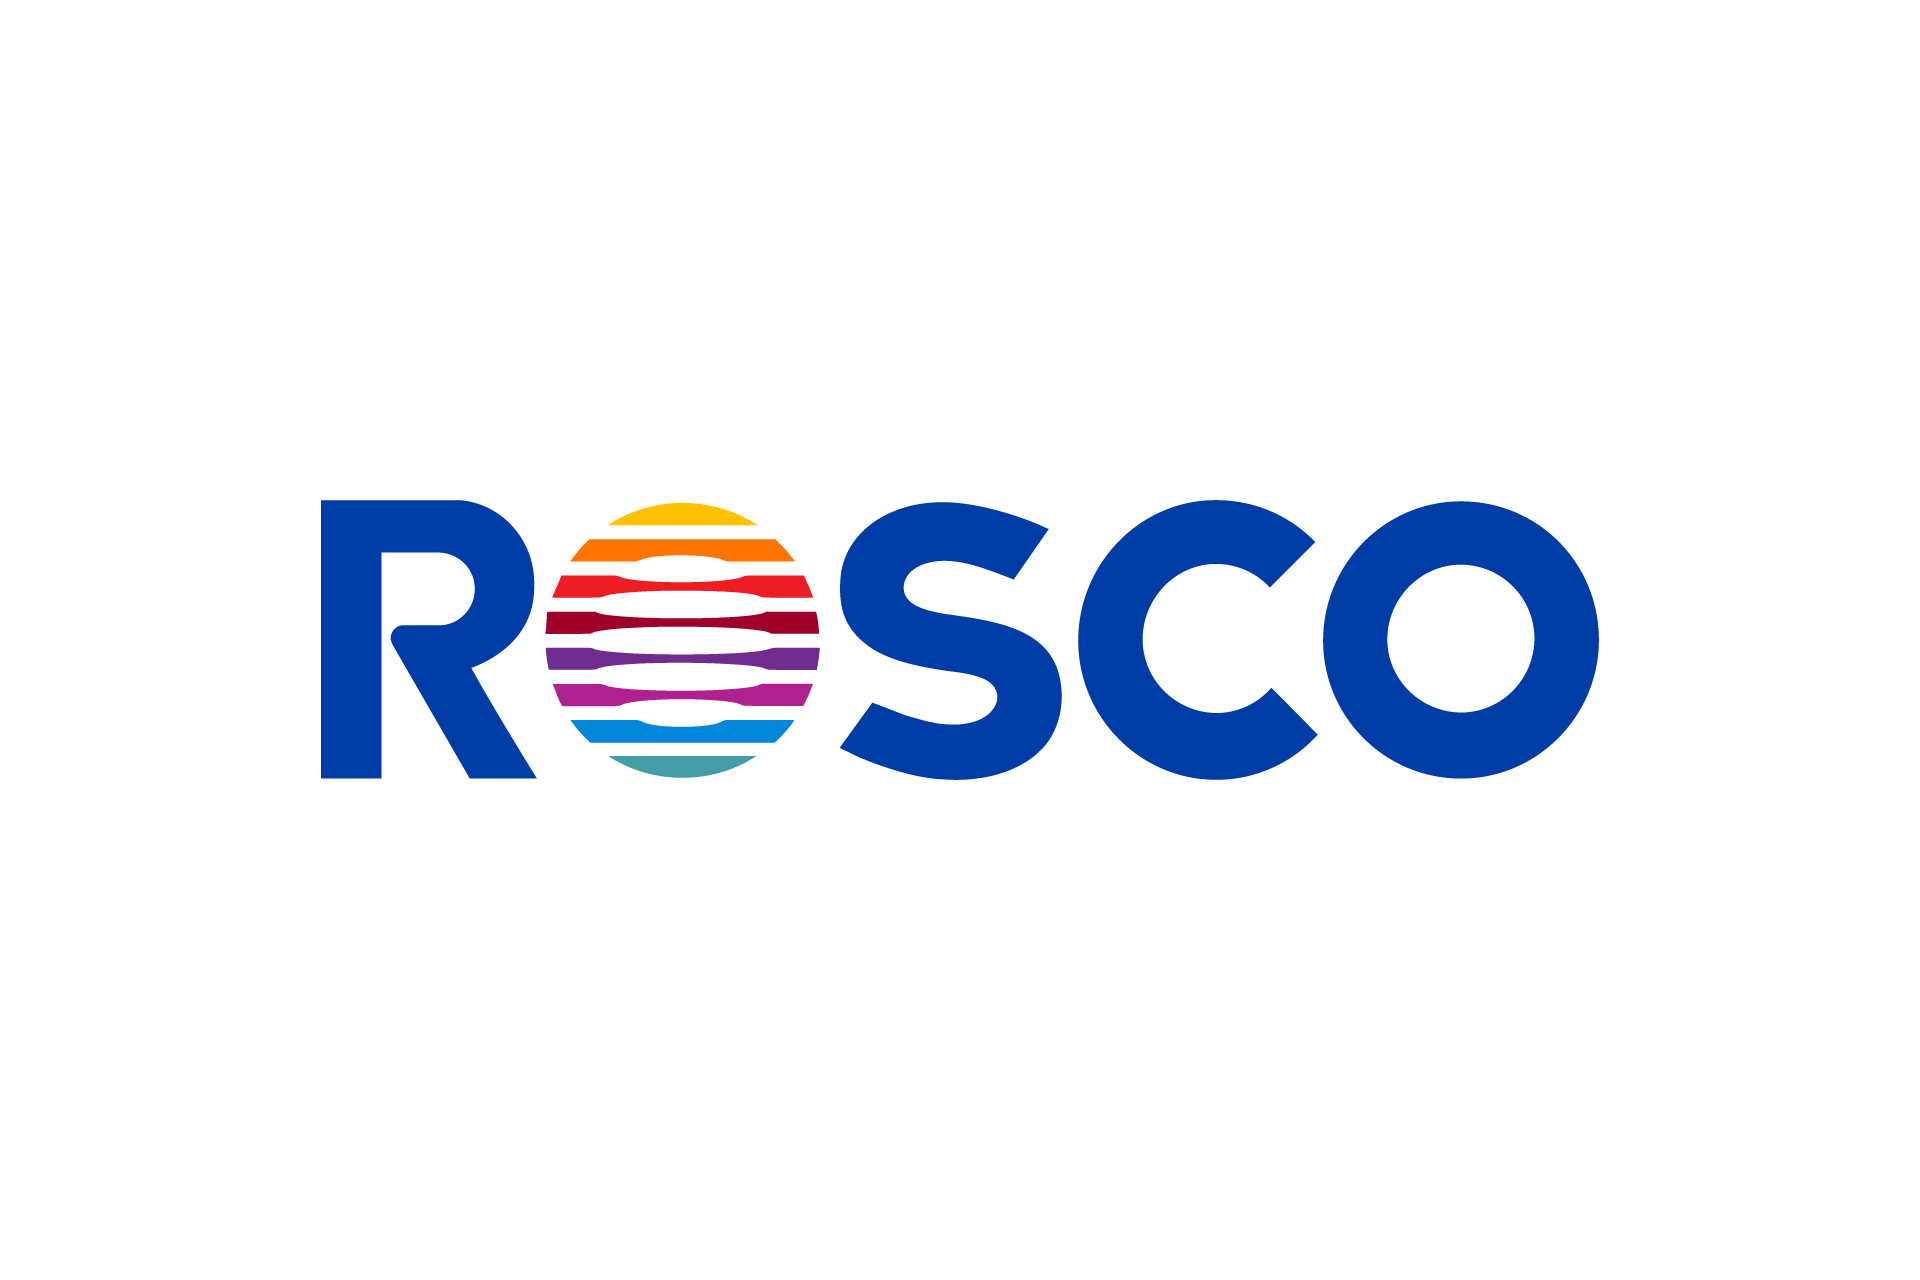 Rosco